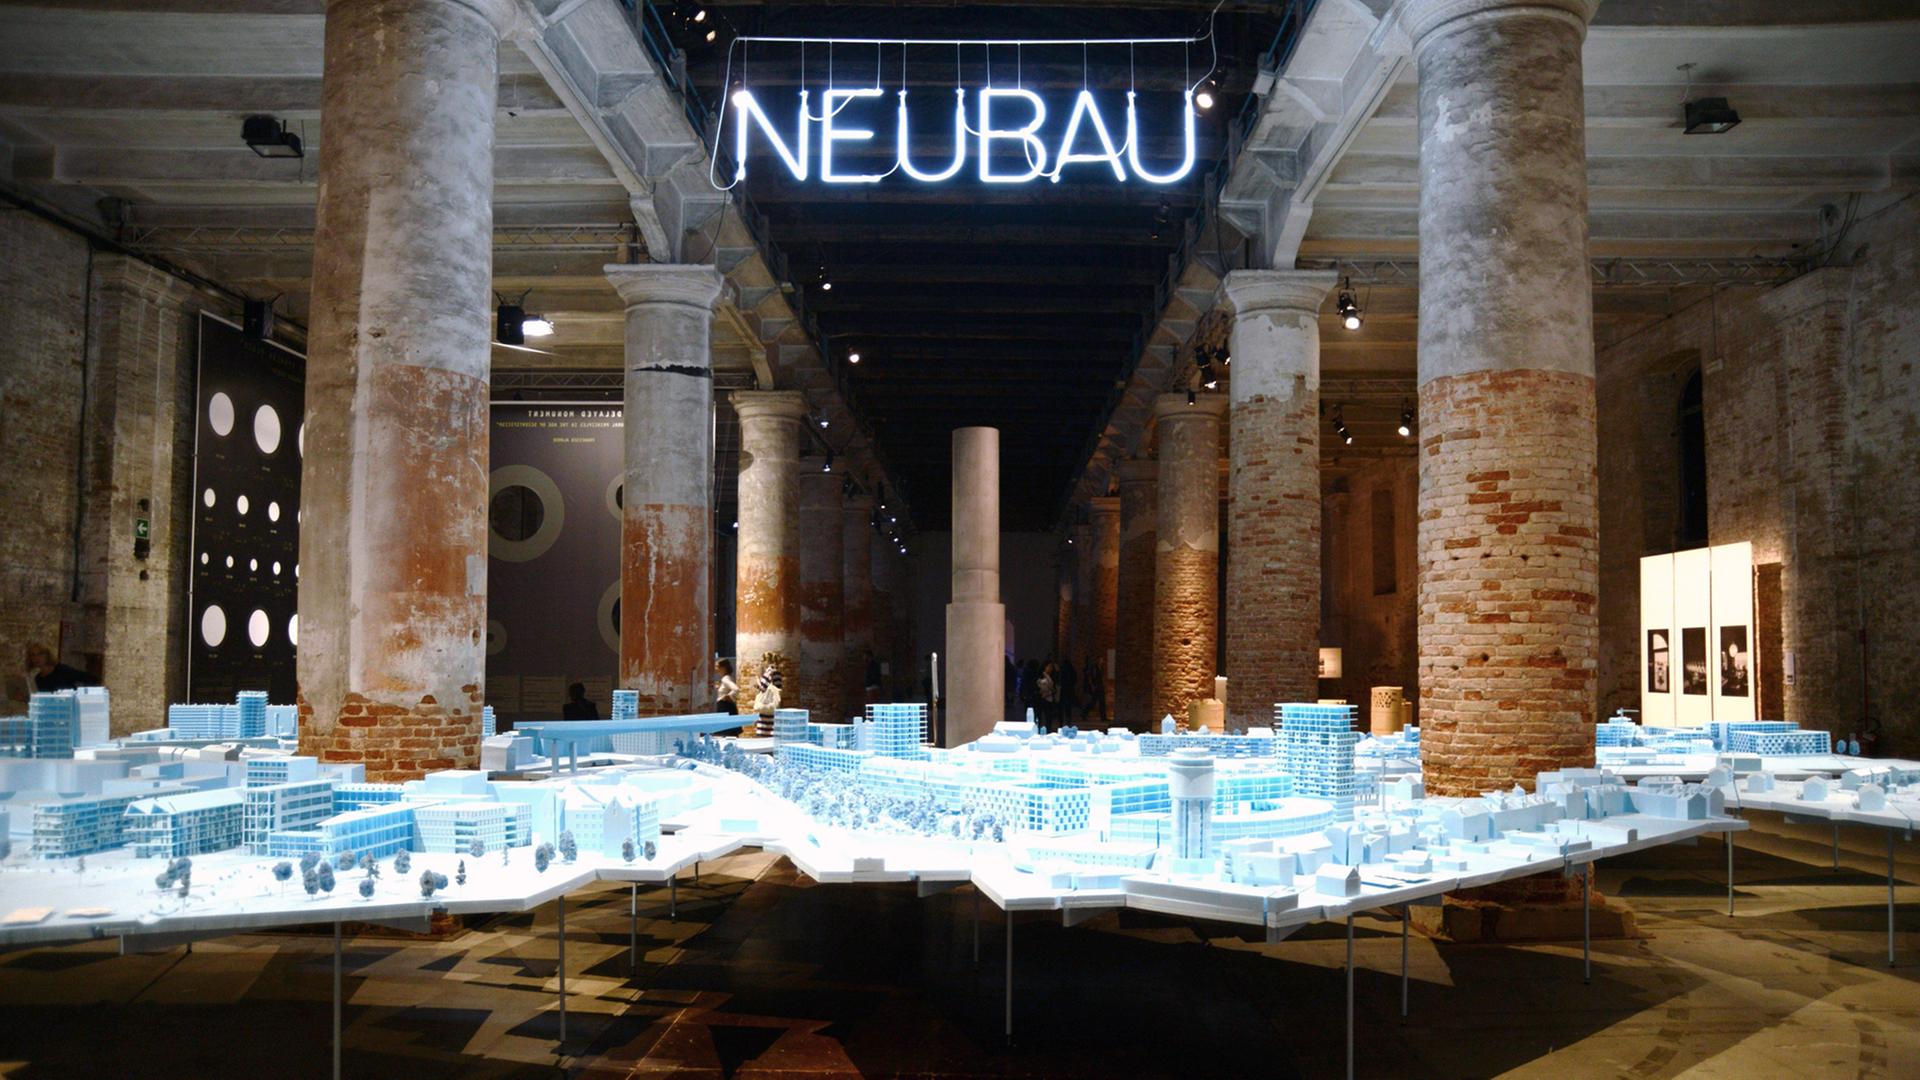 Die 15. Biennale der Architektur in Venedig läuft vom 28.05. bis 27.11.2016. Zu sehen ist eine Achitekturinstallation, darüber hängt der Schriftzug "Neubau" als Neonröhre